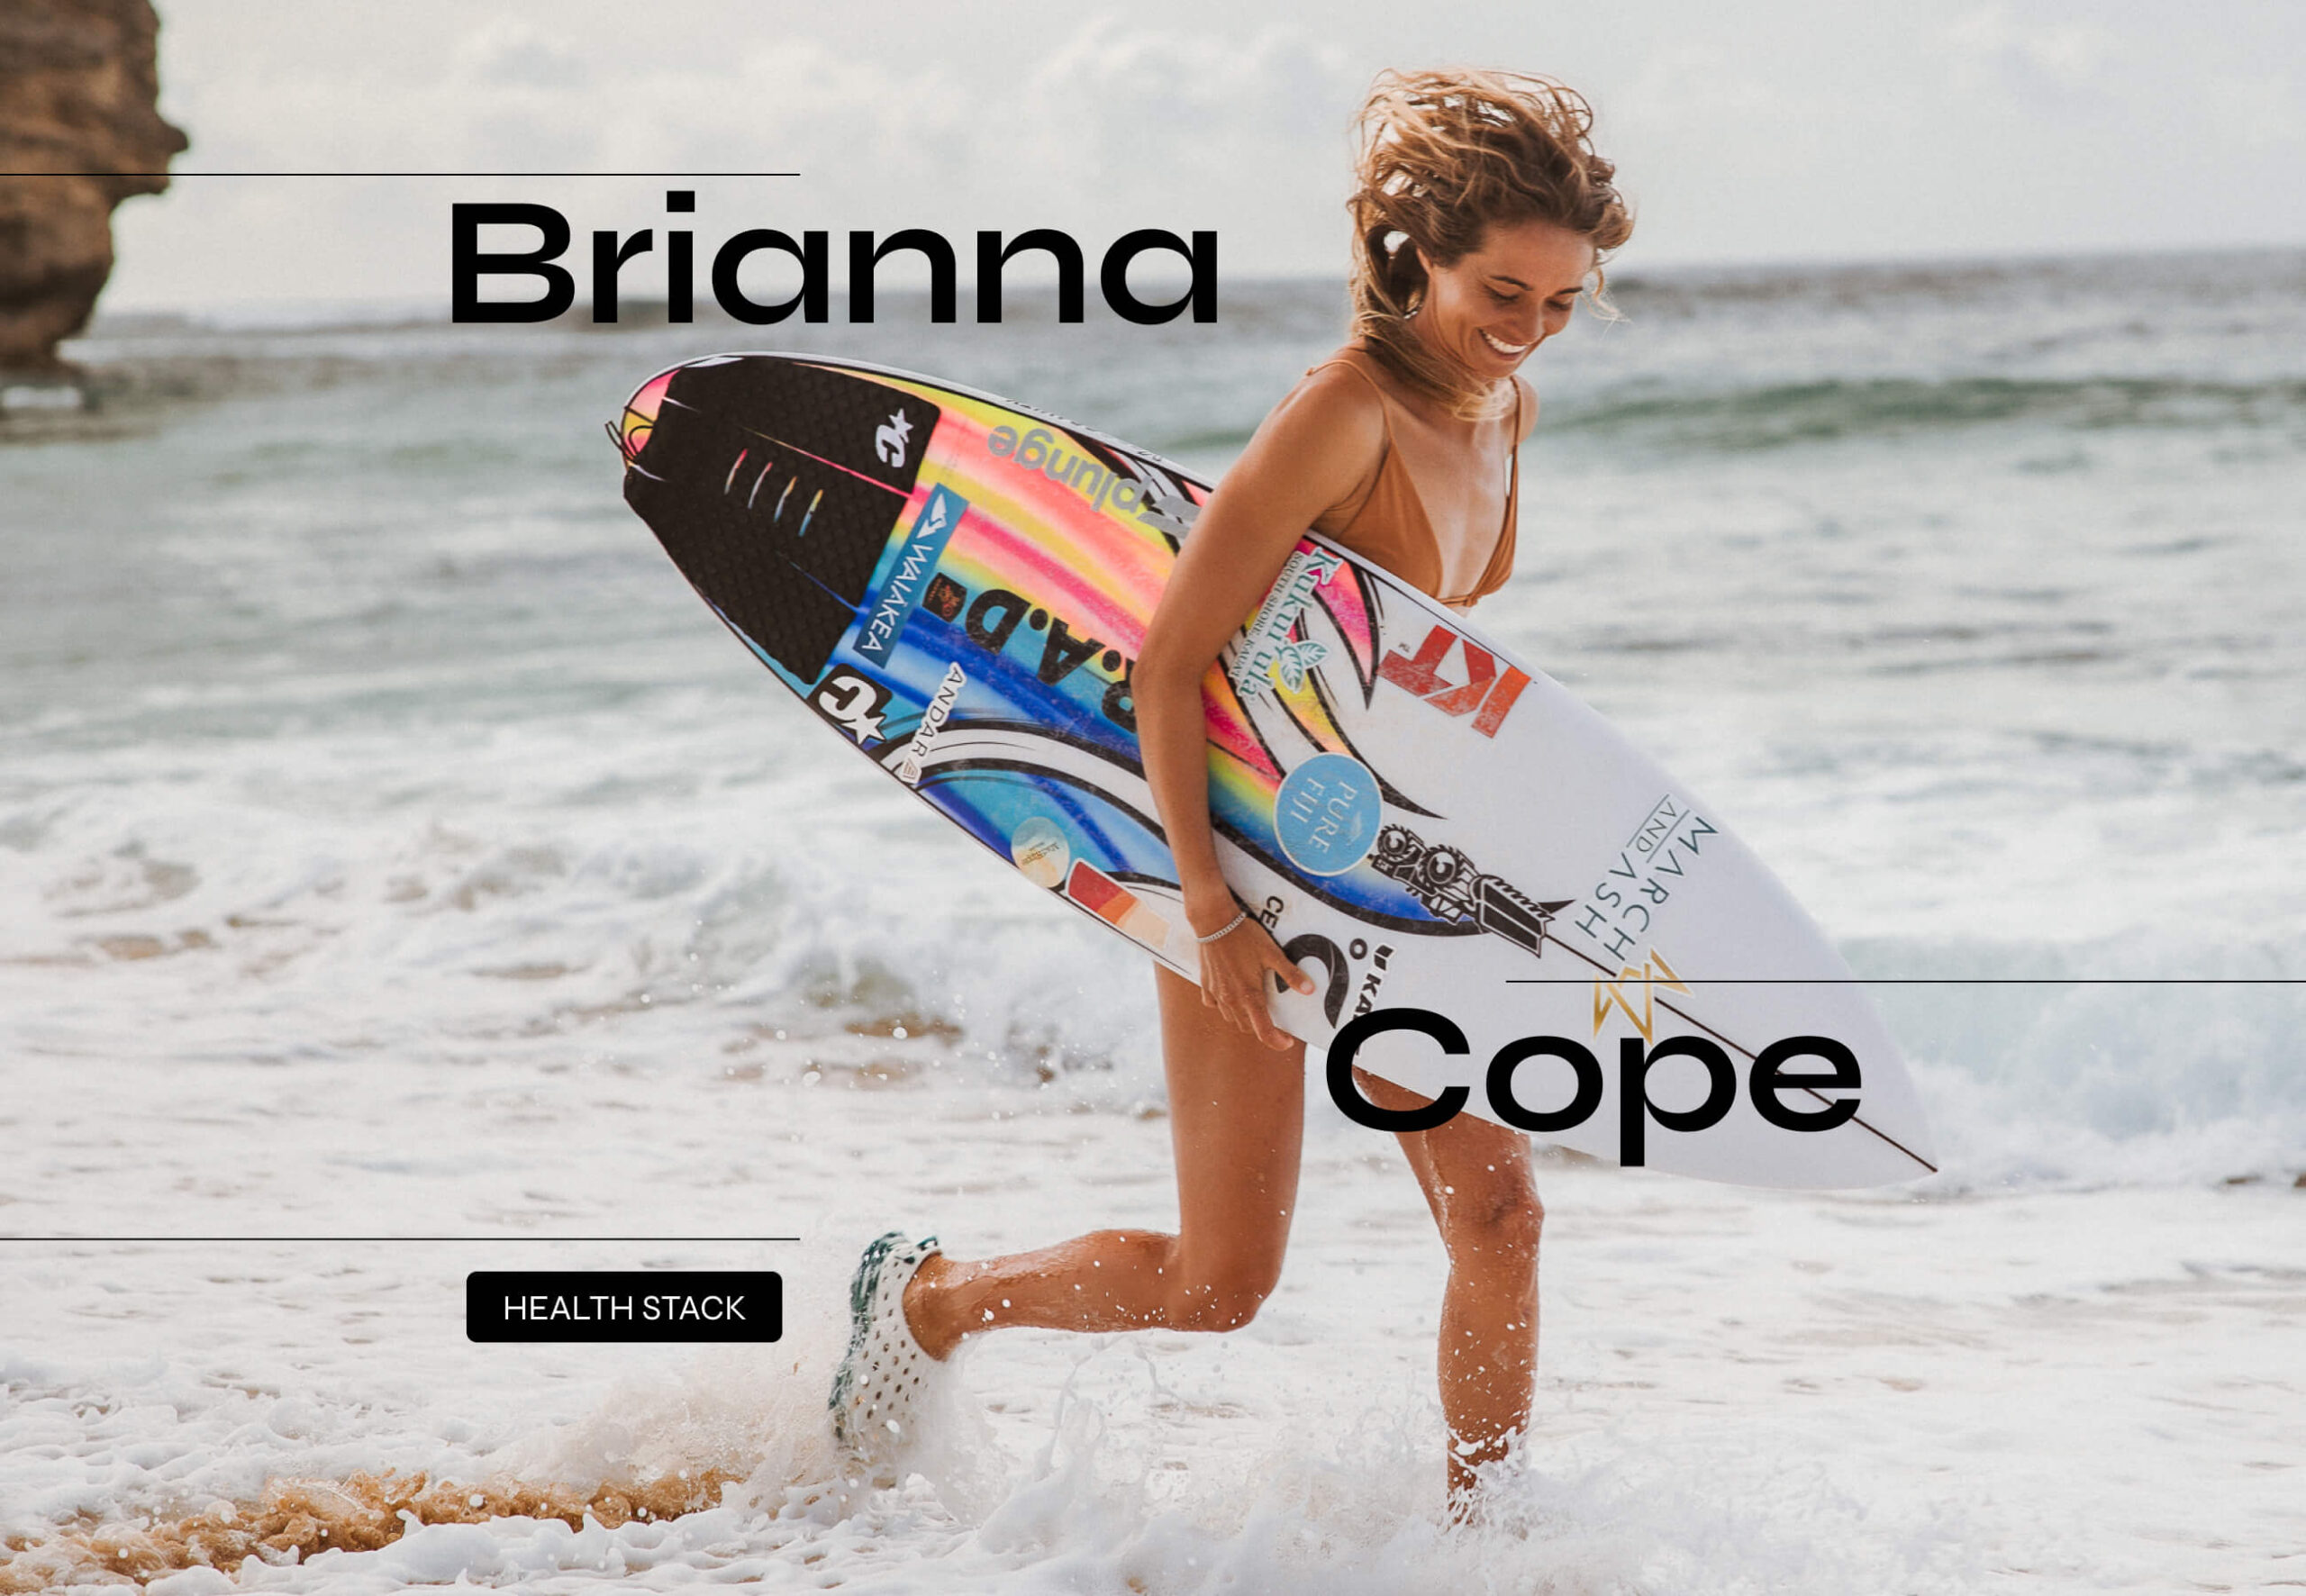 Brianna Cope Health Stack